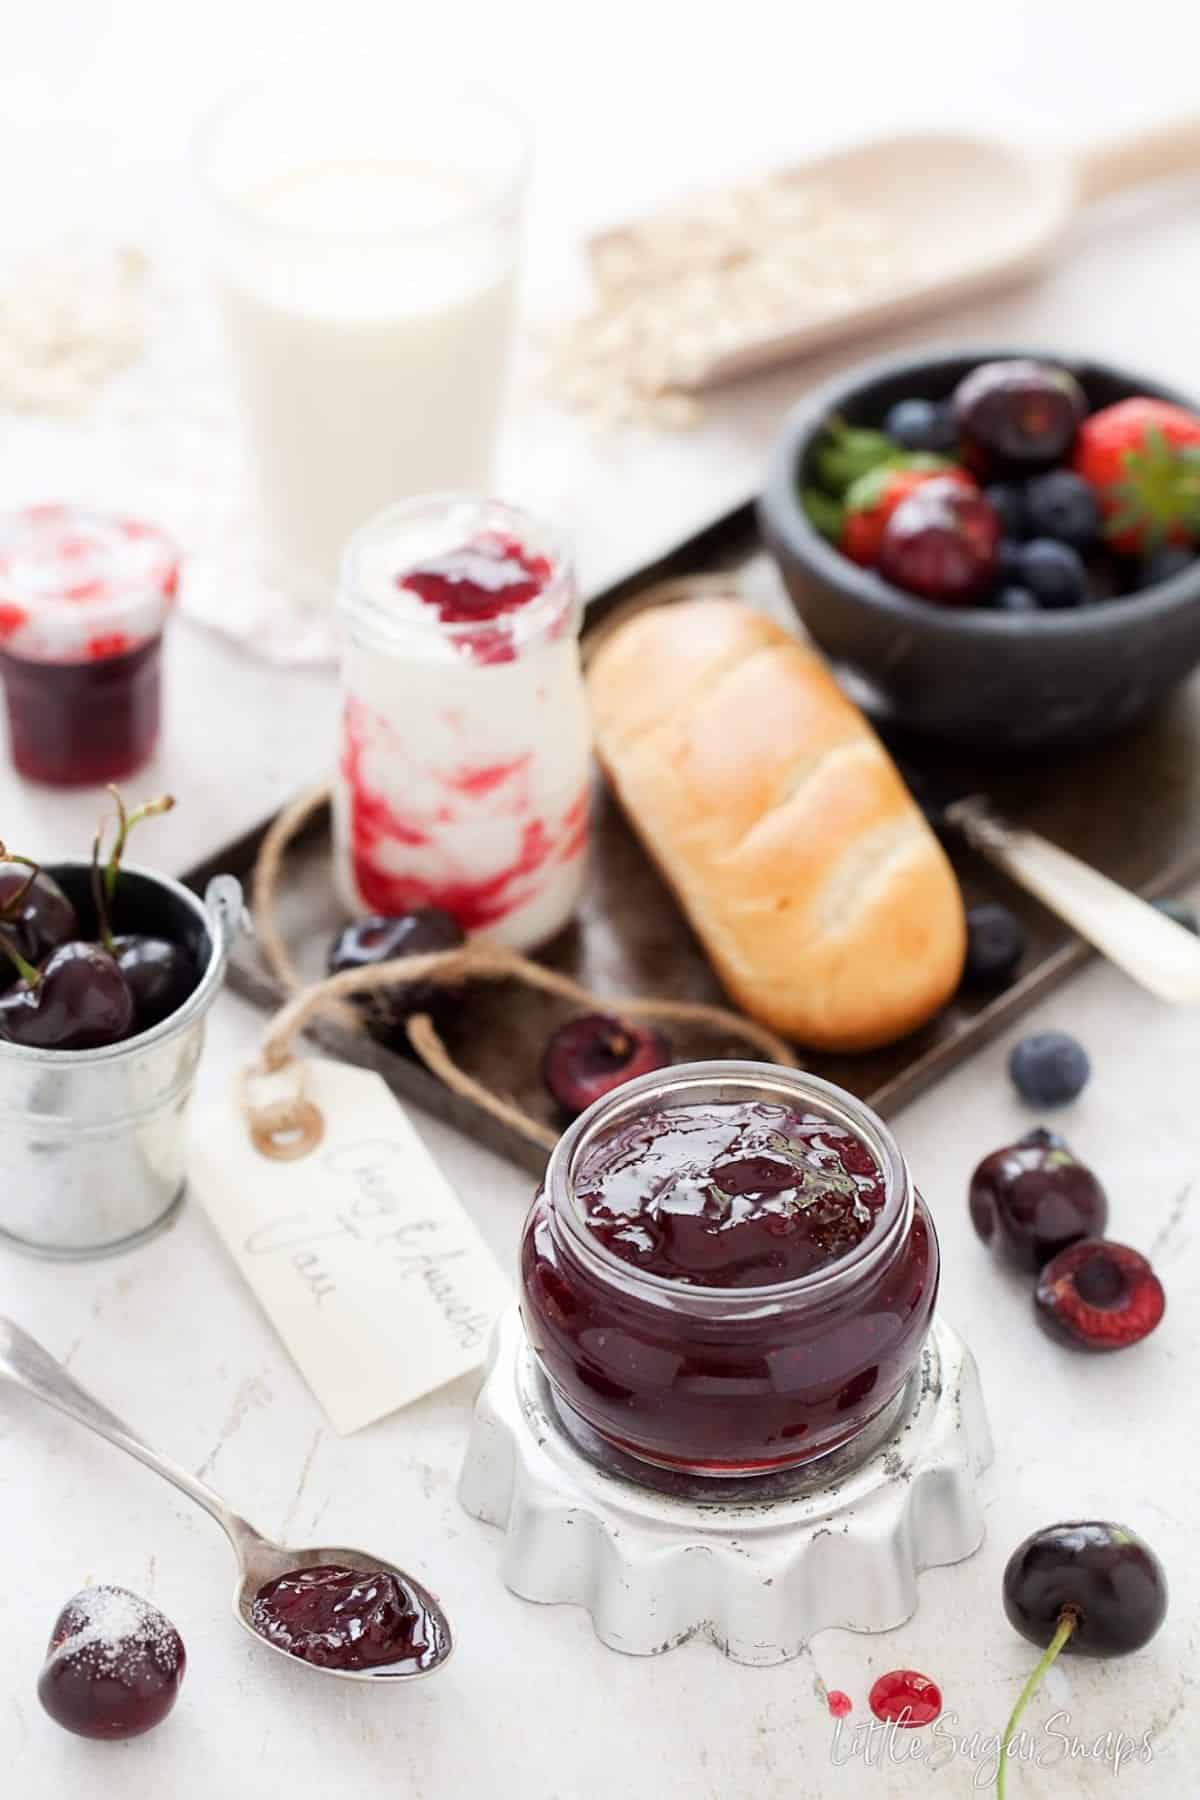 A jar of Amaretto Cherry Jam with fresh cherries and brioche rolls